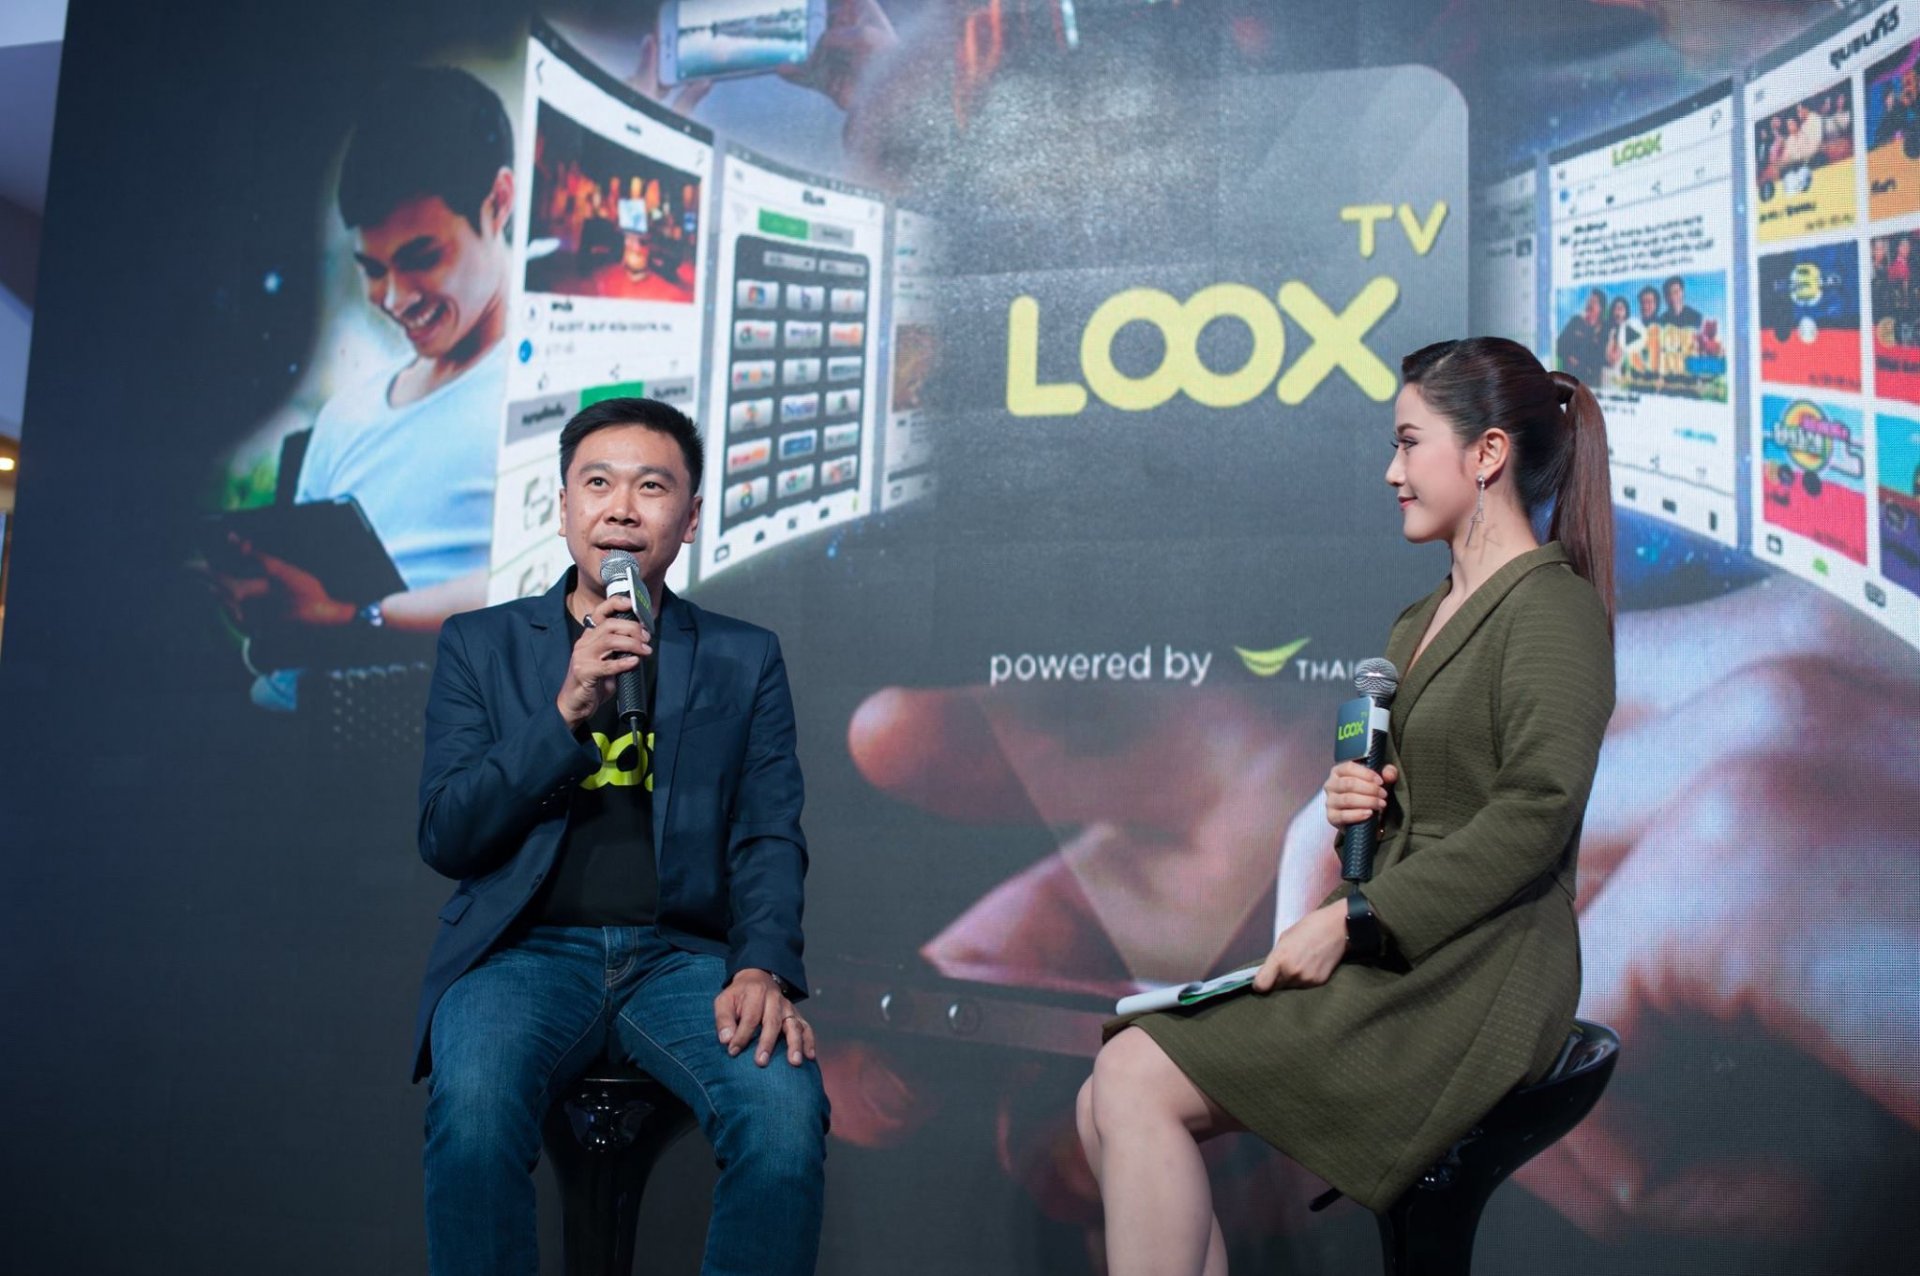 เปิดตัวแอปพลิเคชั่น LOOX TV สร้างประสบการณ์ใหม่ในการรับชมทีวี